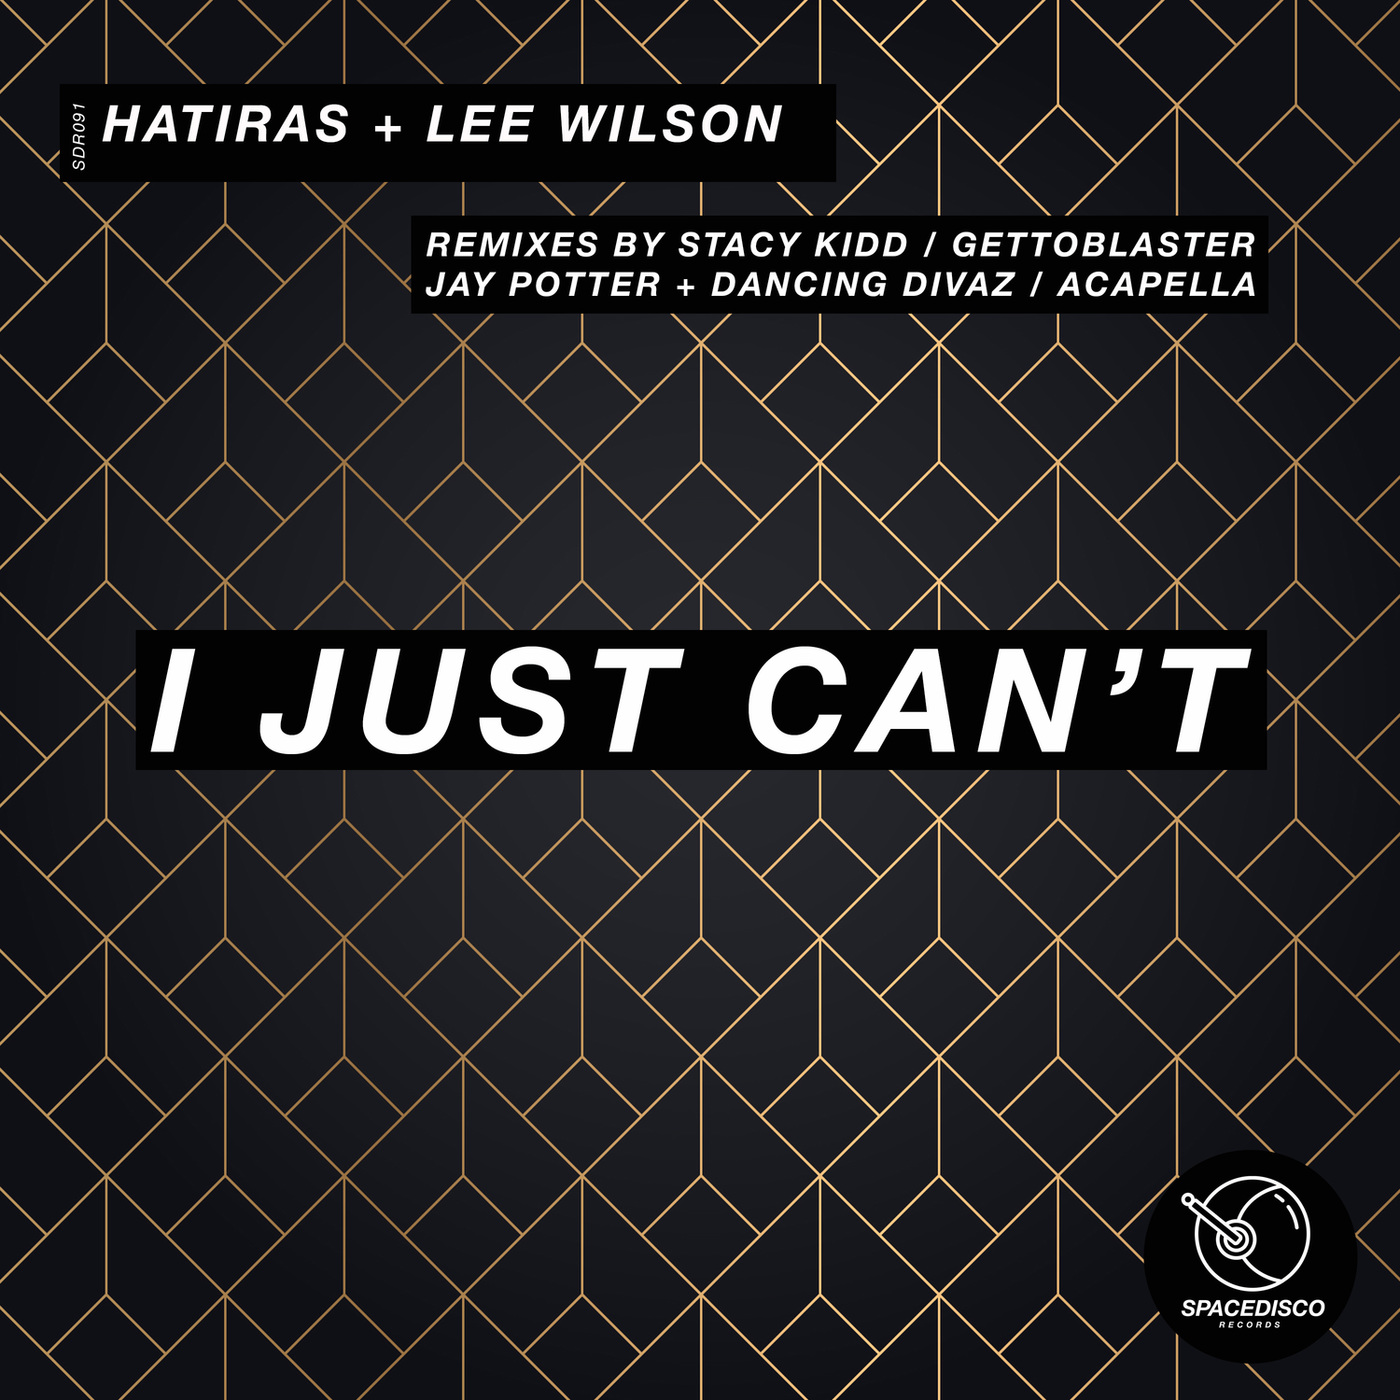 Hatiras & Lee Wilson - I Just Can't Remixes / Spacedisco Records